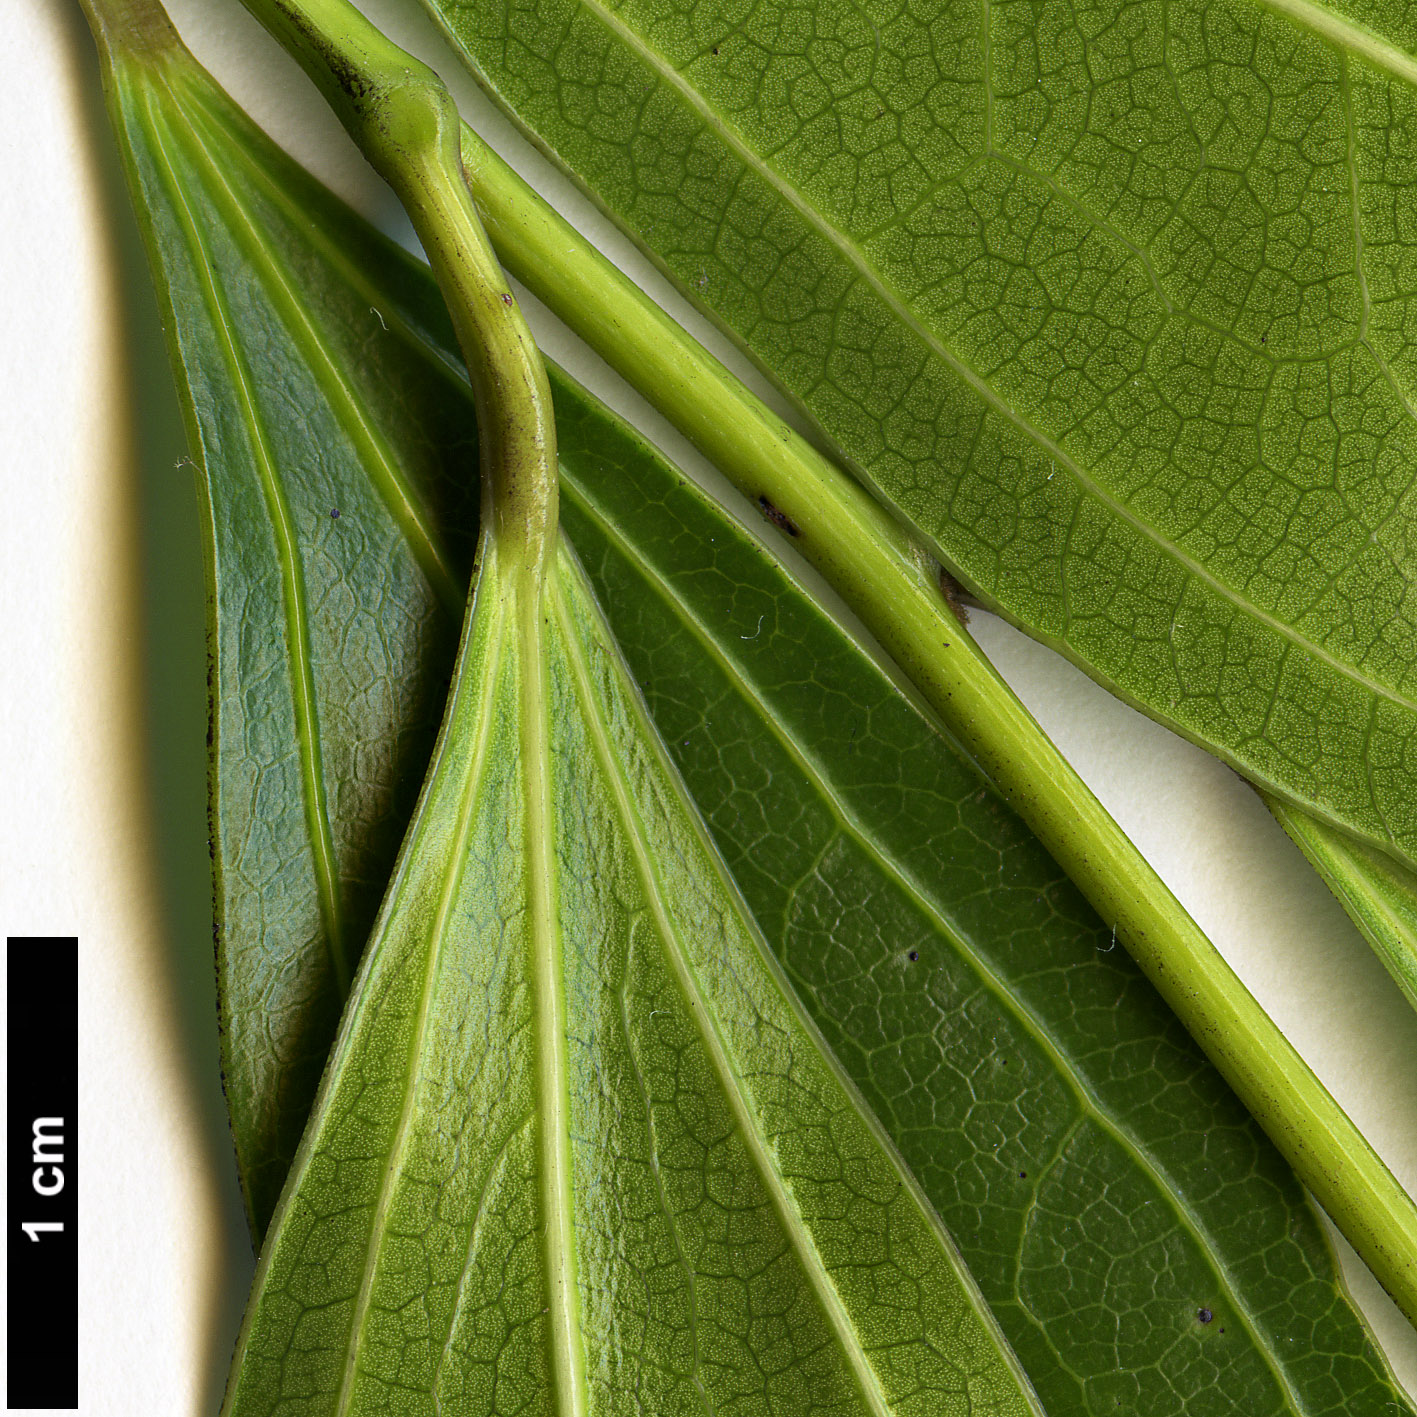 High resolution image: Family: Menispermaceae - Genus: Cocculus - Taxon: laurifolius